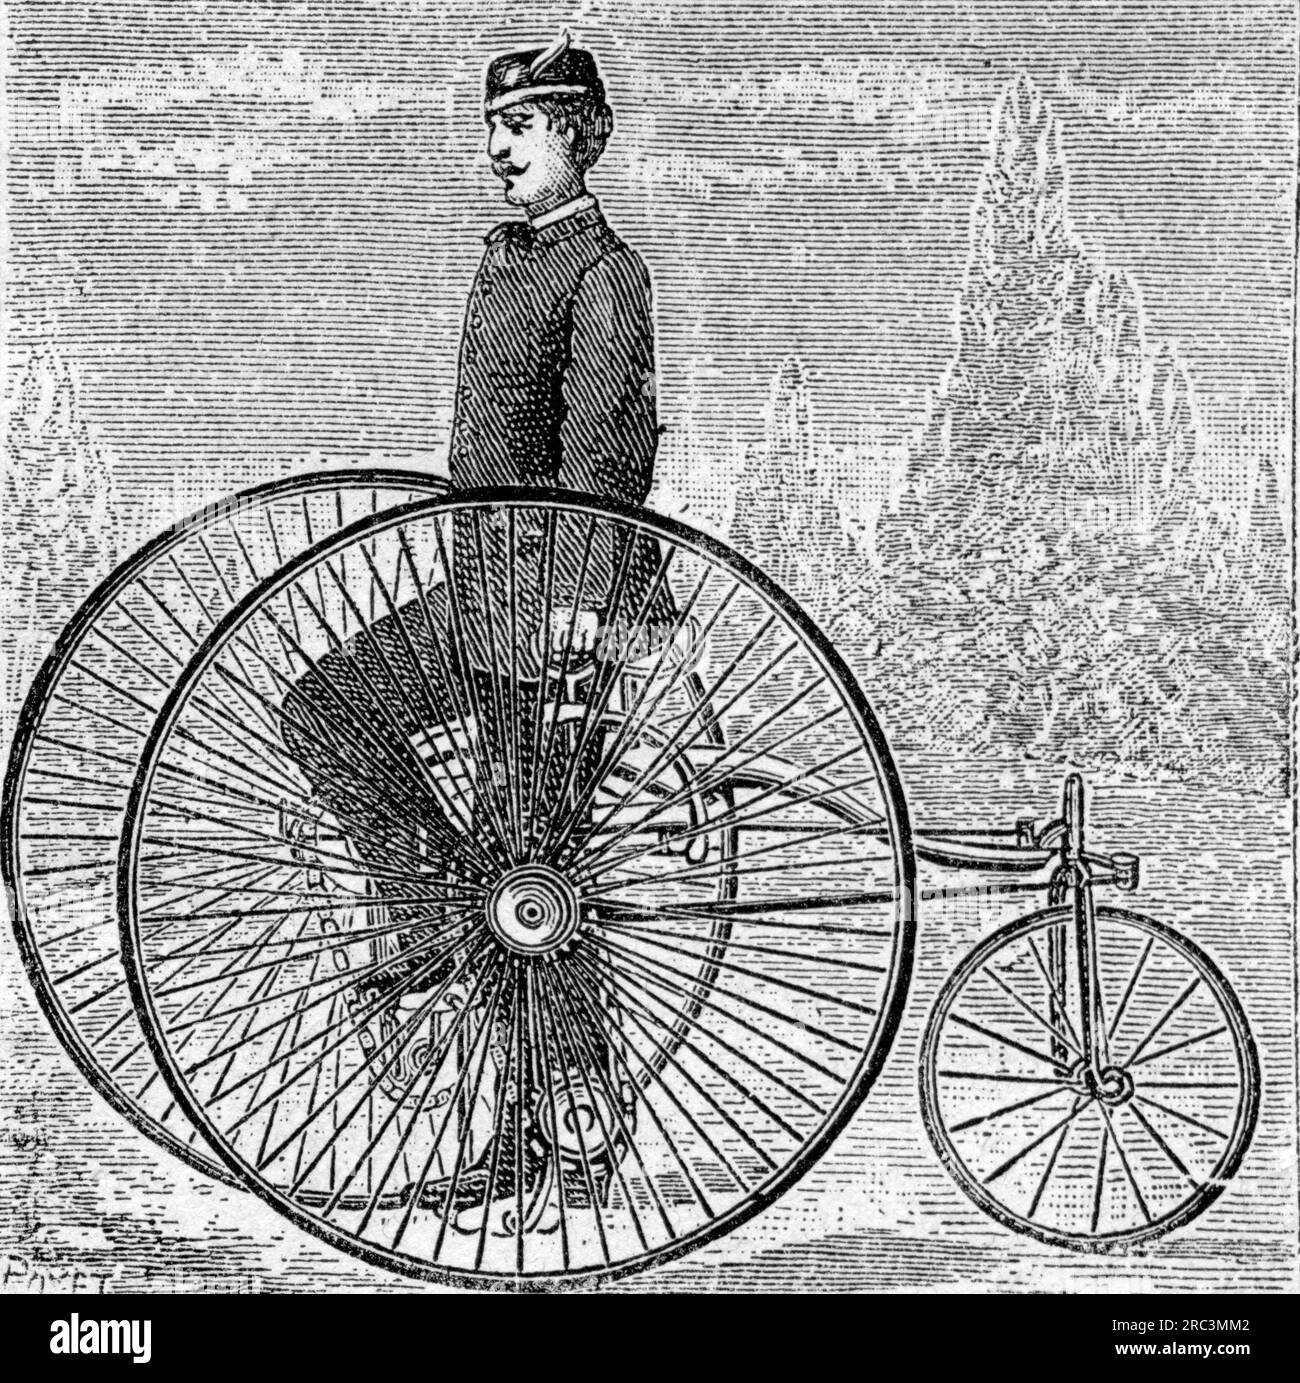 Transport / transport, cycles, tricycle d'Angleterre, siège au-dessus de l'essieu, gravure sur bois par Poyet, LE DROIT D'AUTEUR N'A PAS ÉTÉ EFFACÉ Banque D'Images